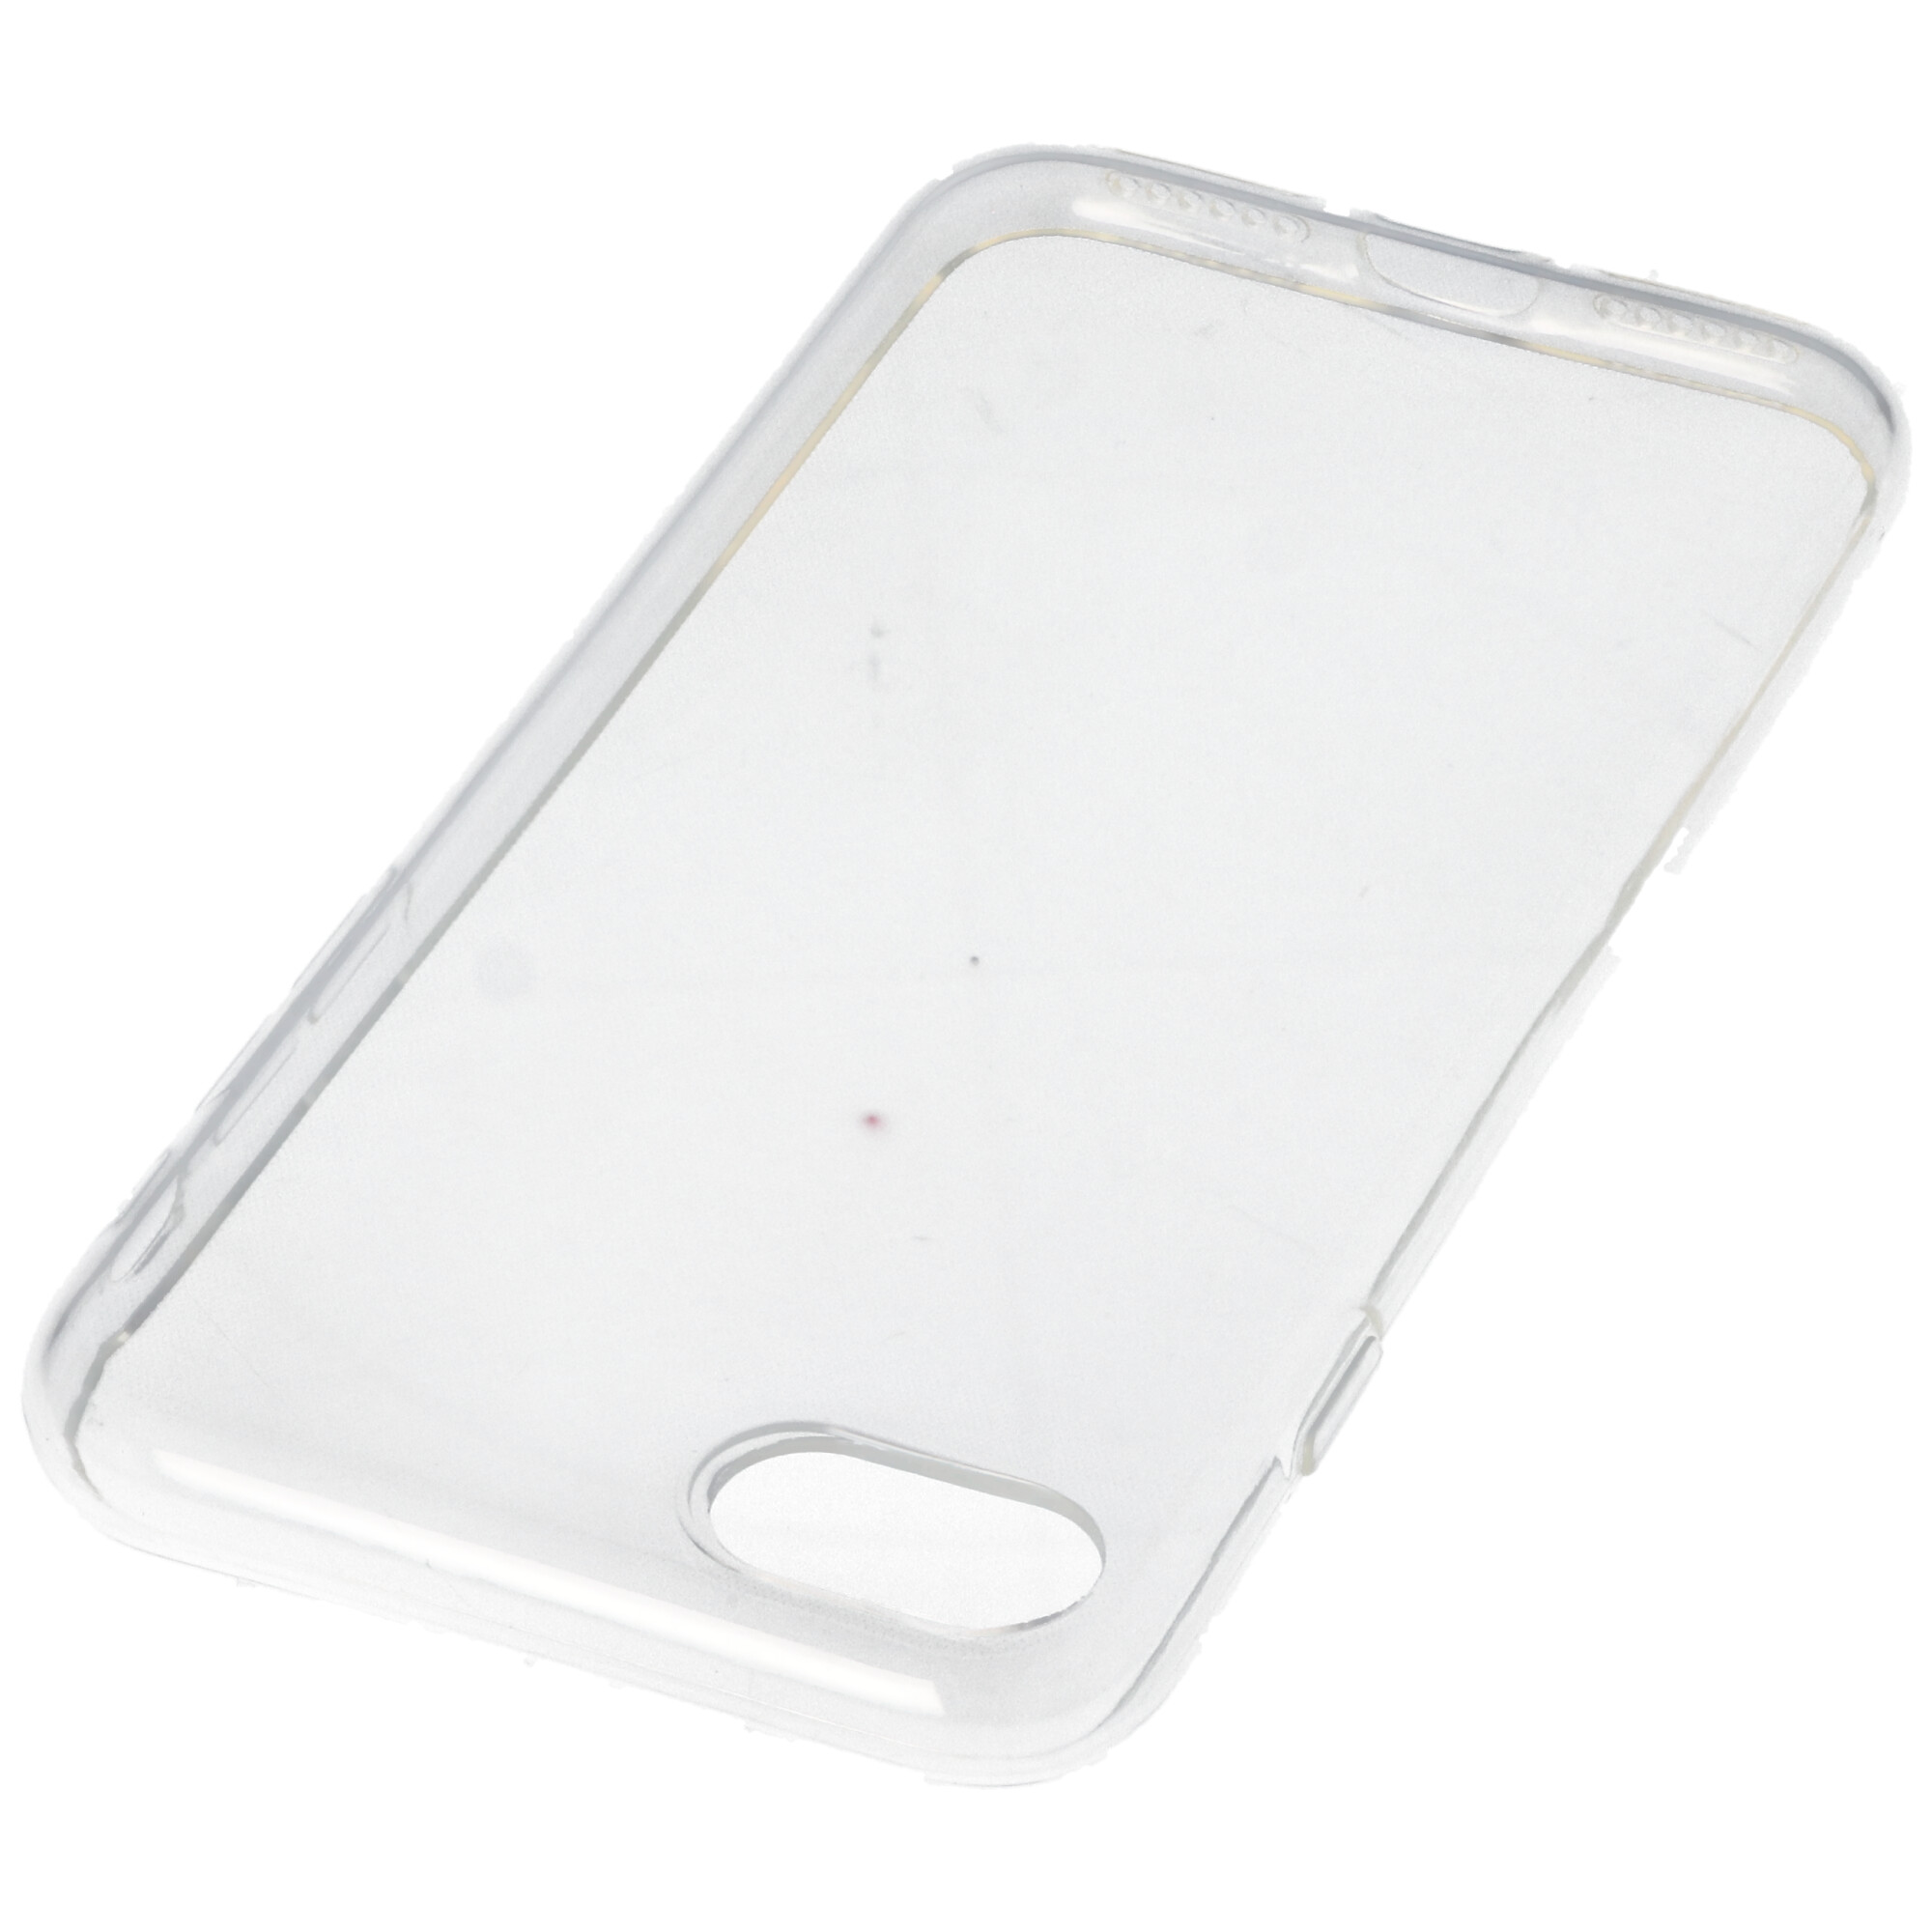 Hülle passend für Apple iPhone SE 2020 - transparente Schutzhülle, Anti-Gelb Luftkissen Fallschutz Silikon Handyhülle robustes TPU Case